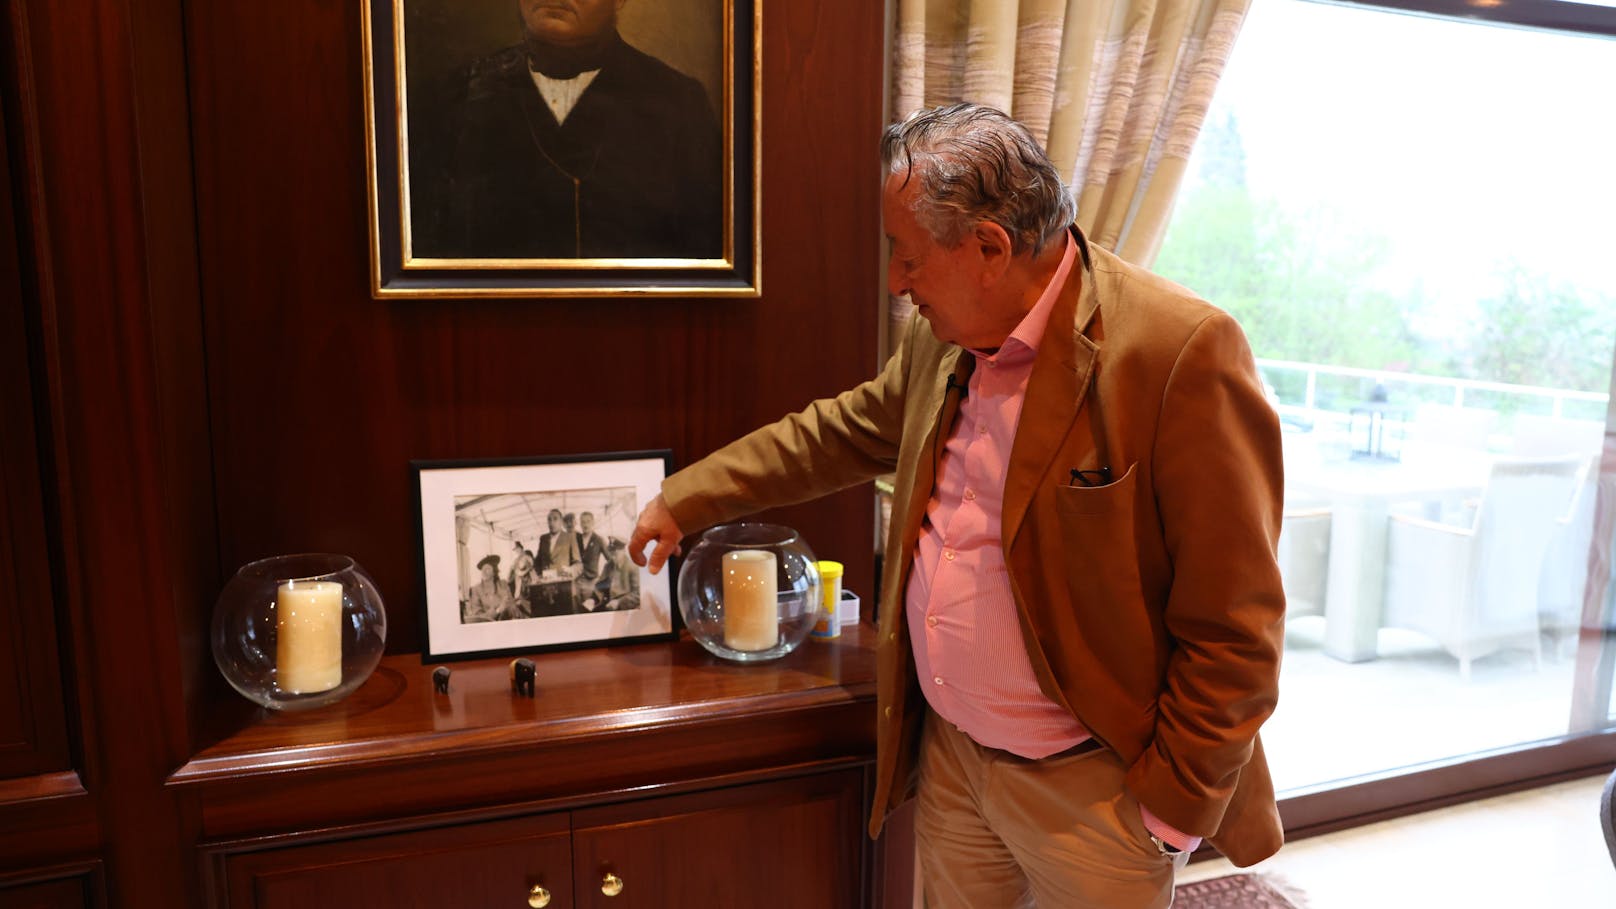 Lugner verehrt seinen Vater, Großvater und Urgroßvater und hat überall in der Villa Fotografien und Bilder seiner Verwandten hängen